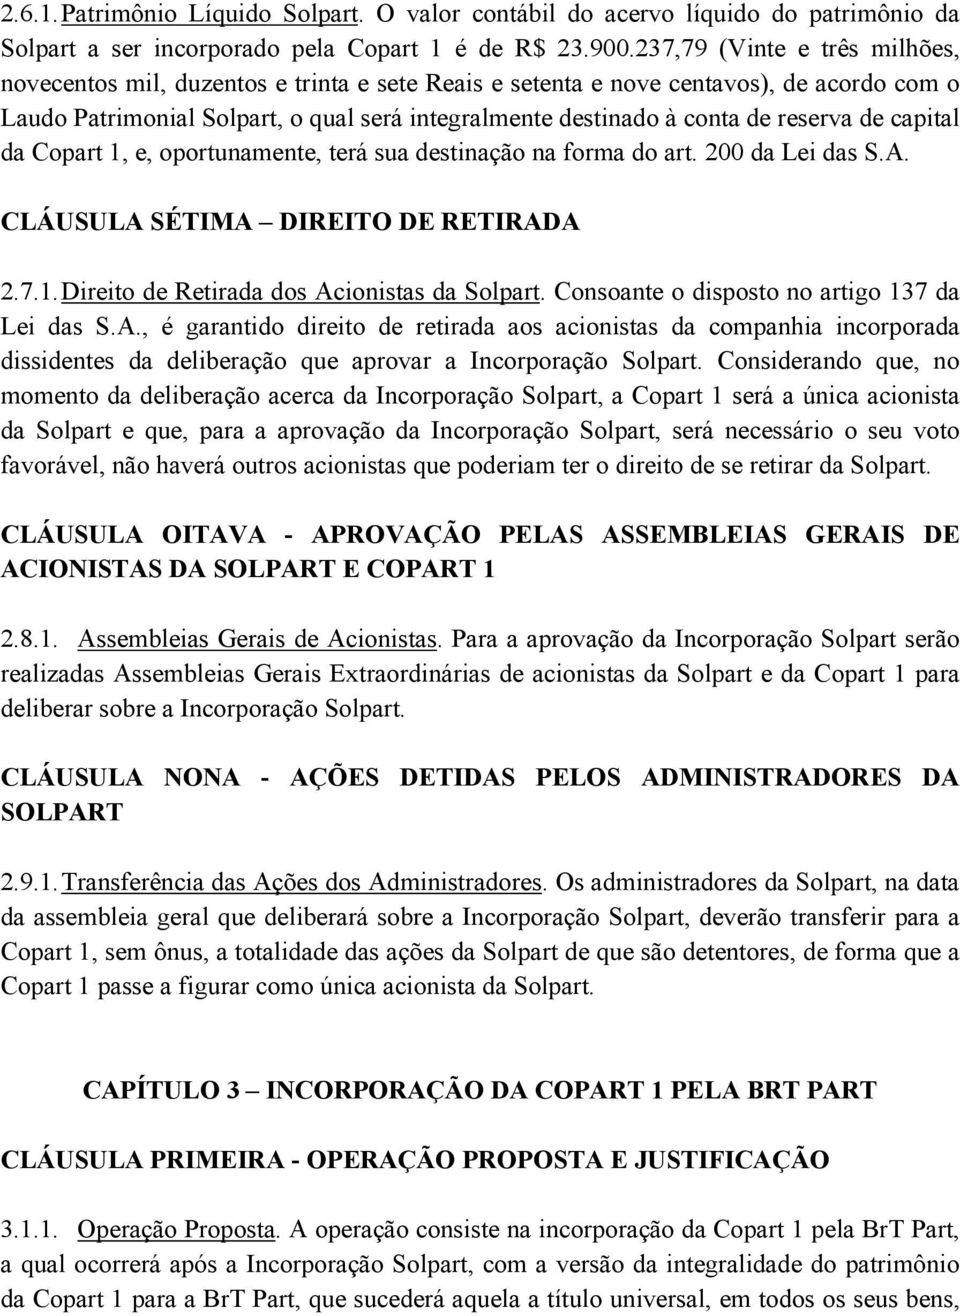 reserva de capital da Copart 1, e, oportunamente, terá sua destinação na forma do art. 200 da Lei das S.A. CLÁUSULA SÉTIMA DIREITO DE RETIRADA 2.7.1. Direito de Retirada dos Acionistas da Solpart.